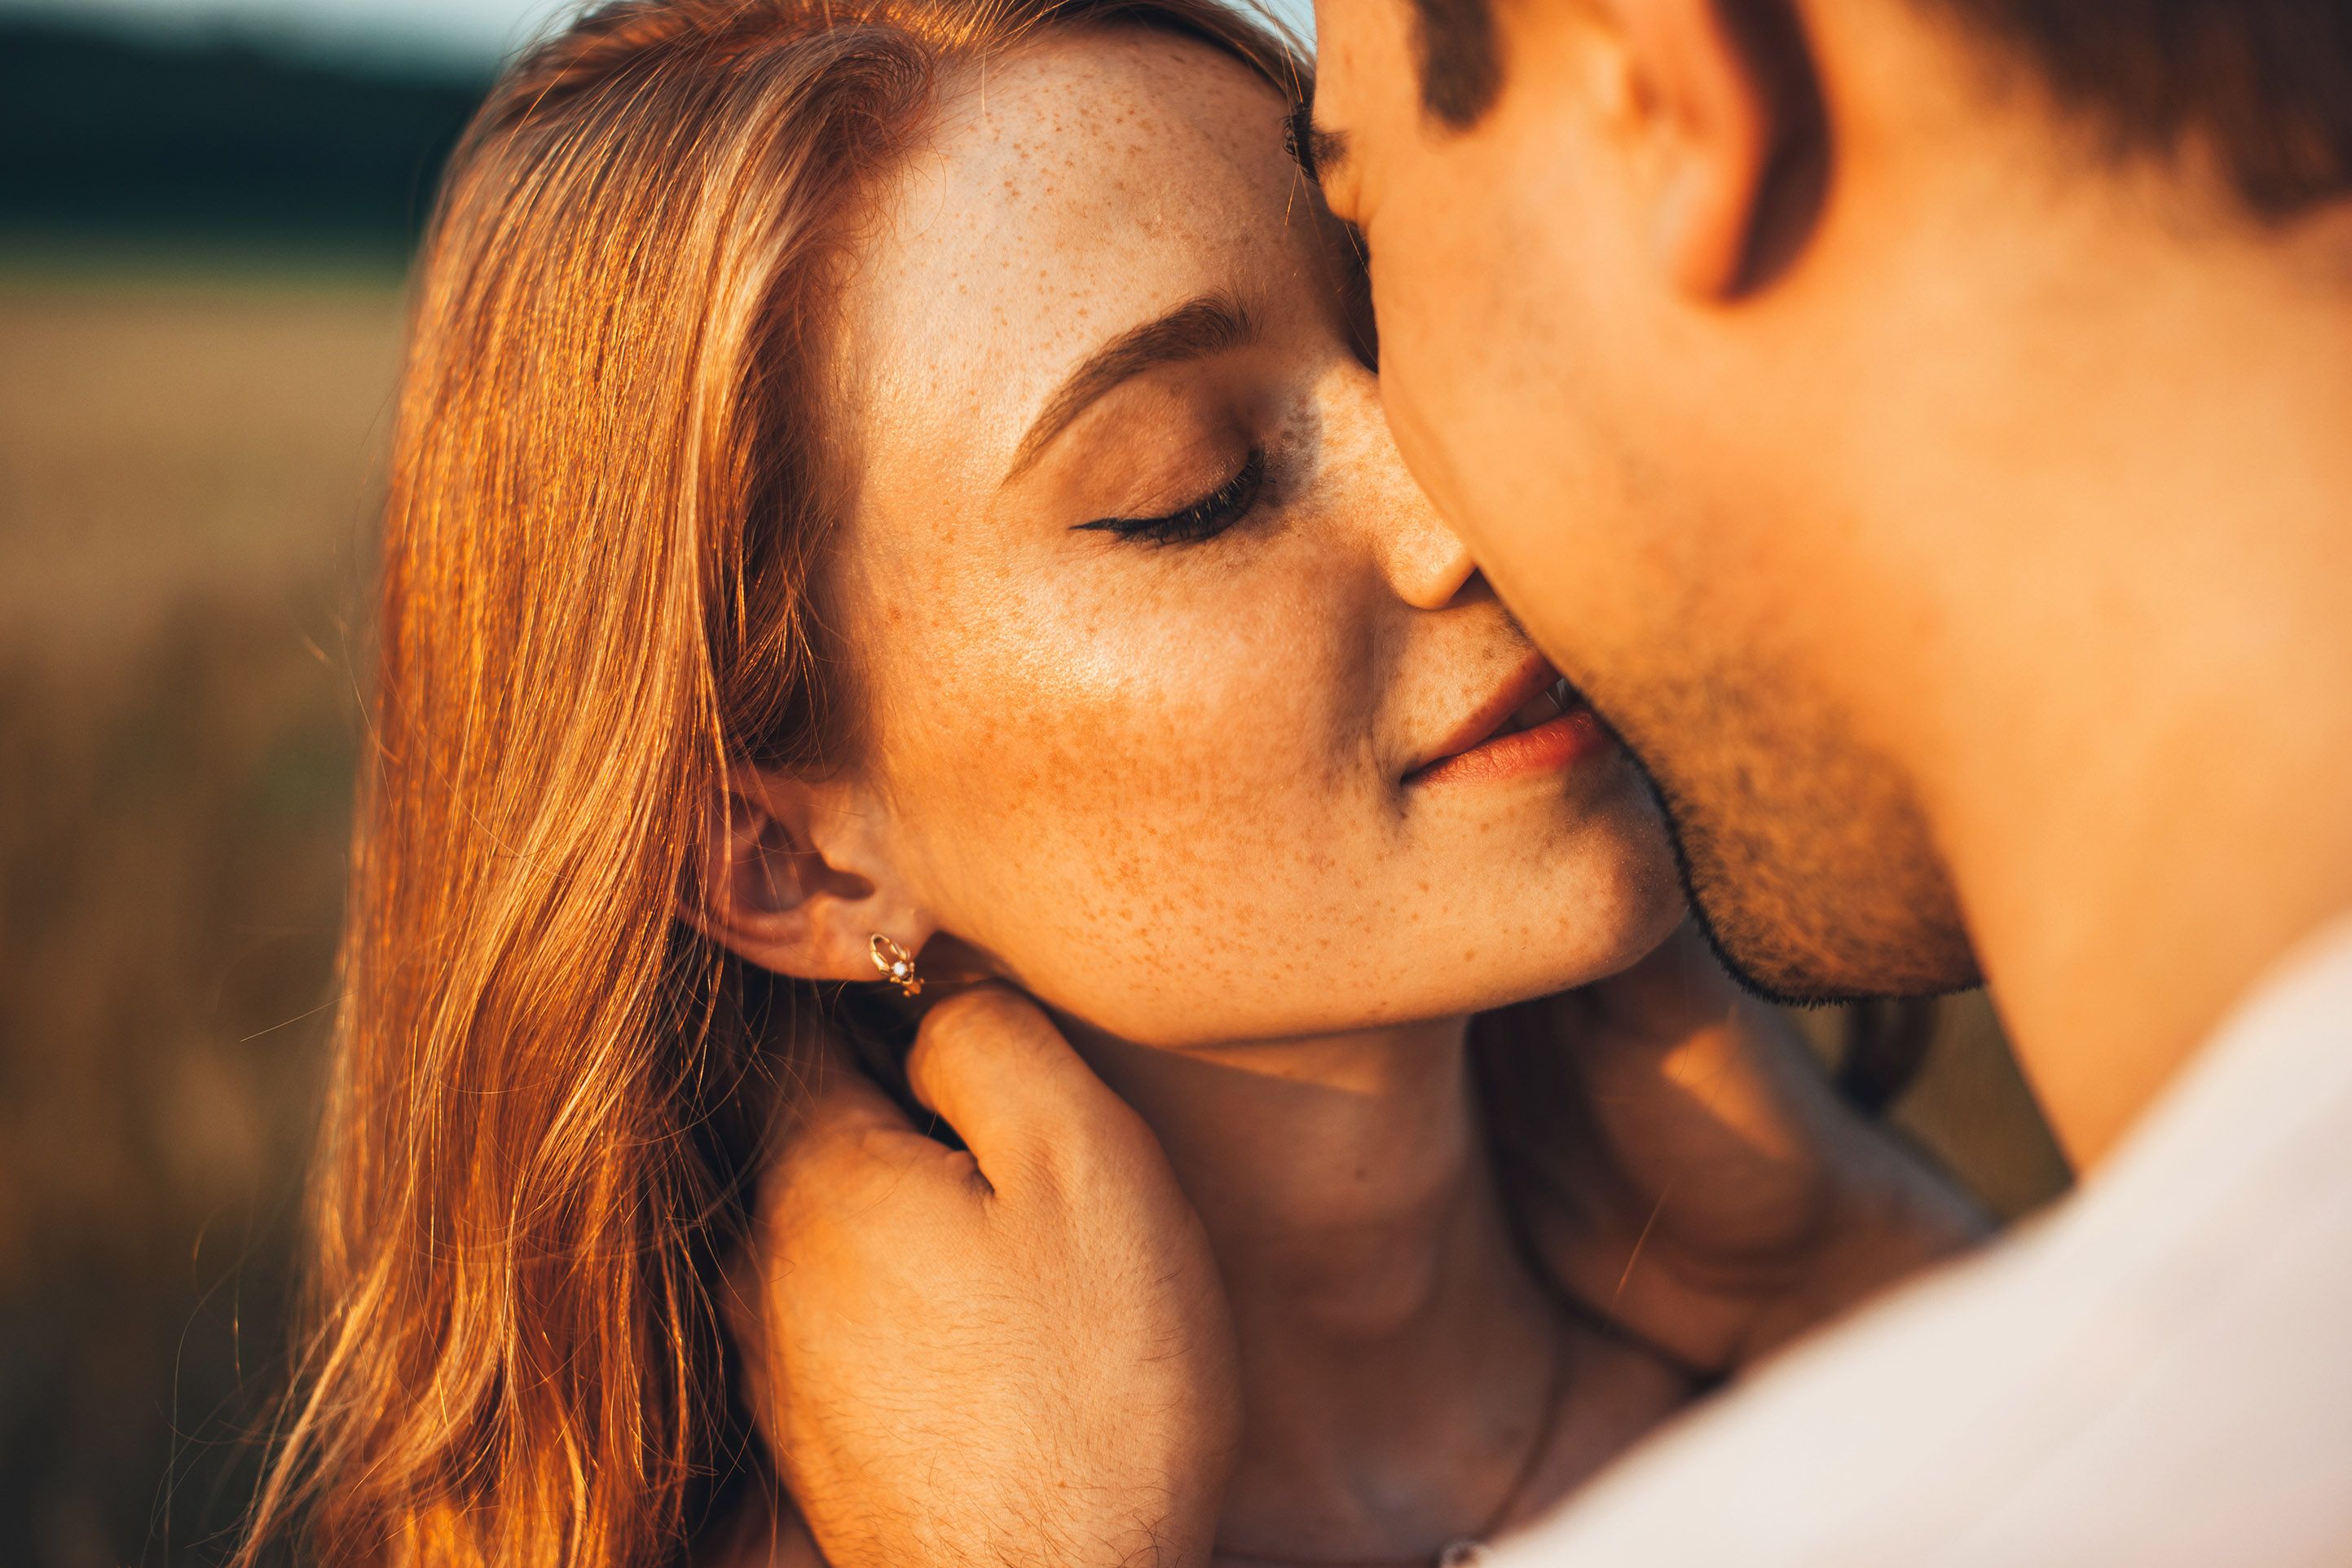 Trois jeunes sur dix pensent à tort que le virus du sida peut se transmettre en embrassant une personne séropositive. © Strelciuc Dumitru, Getty Images